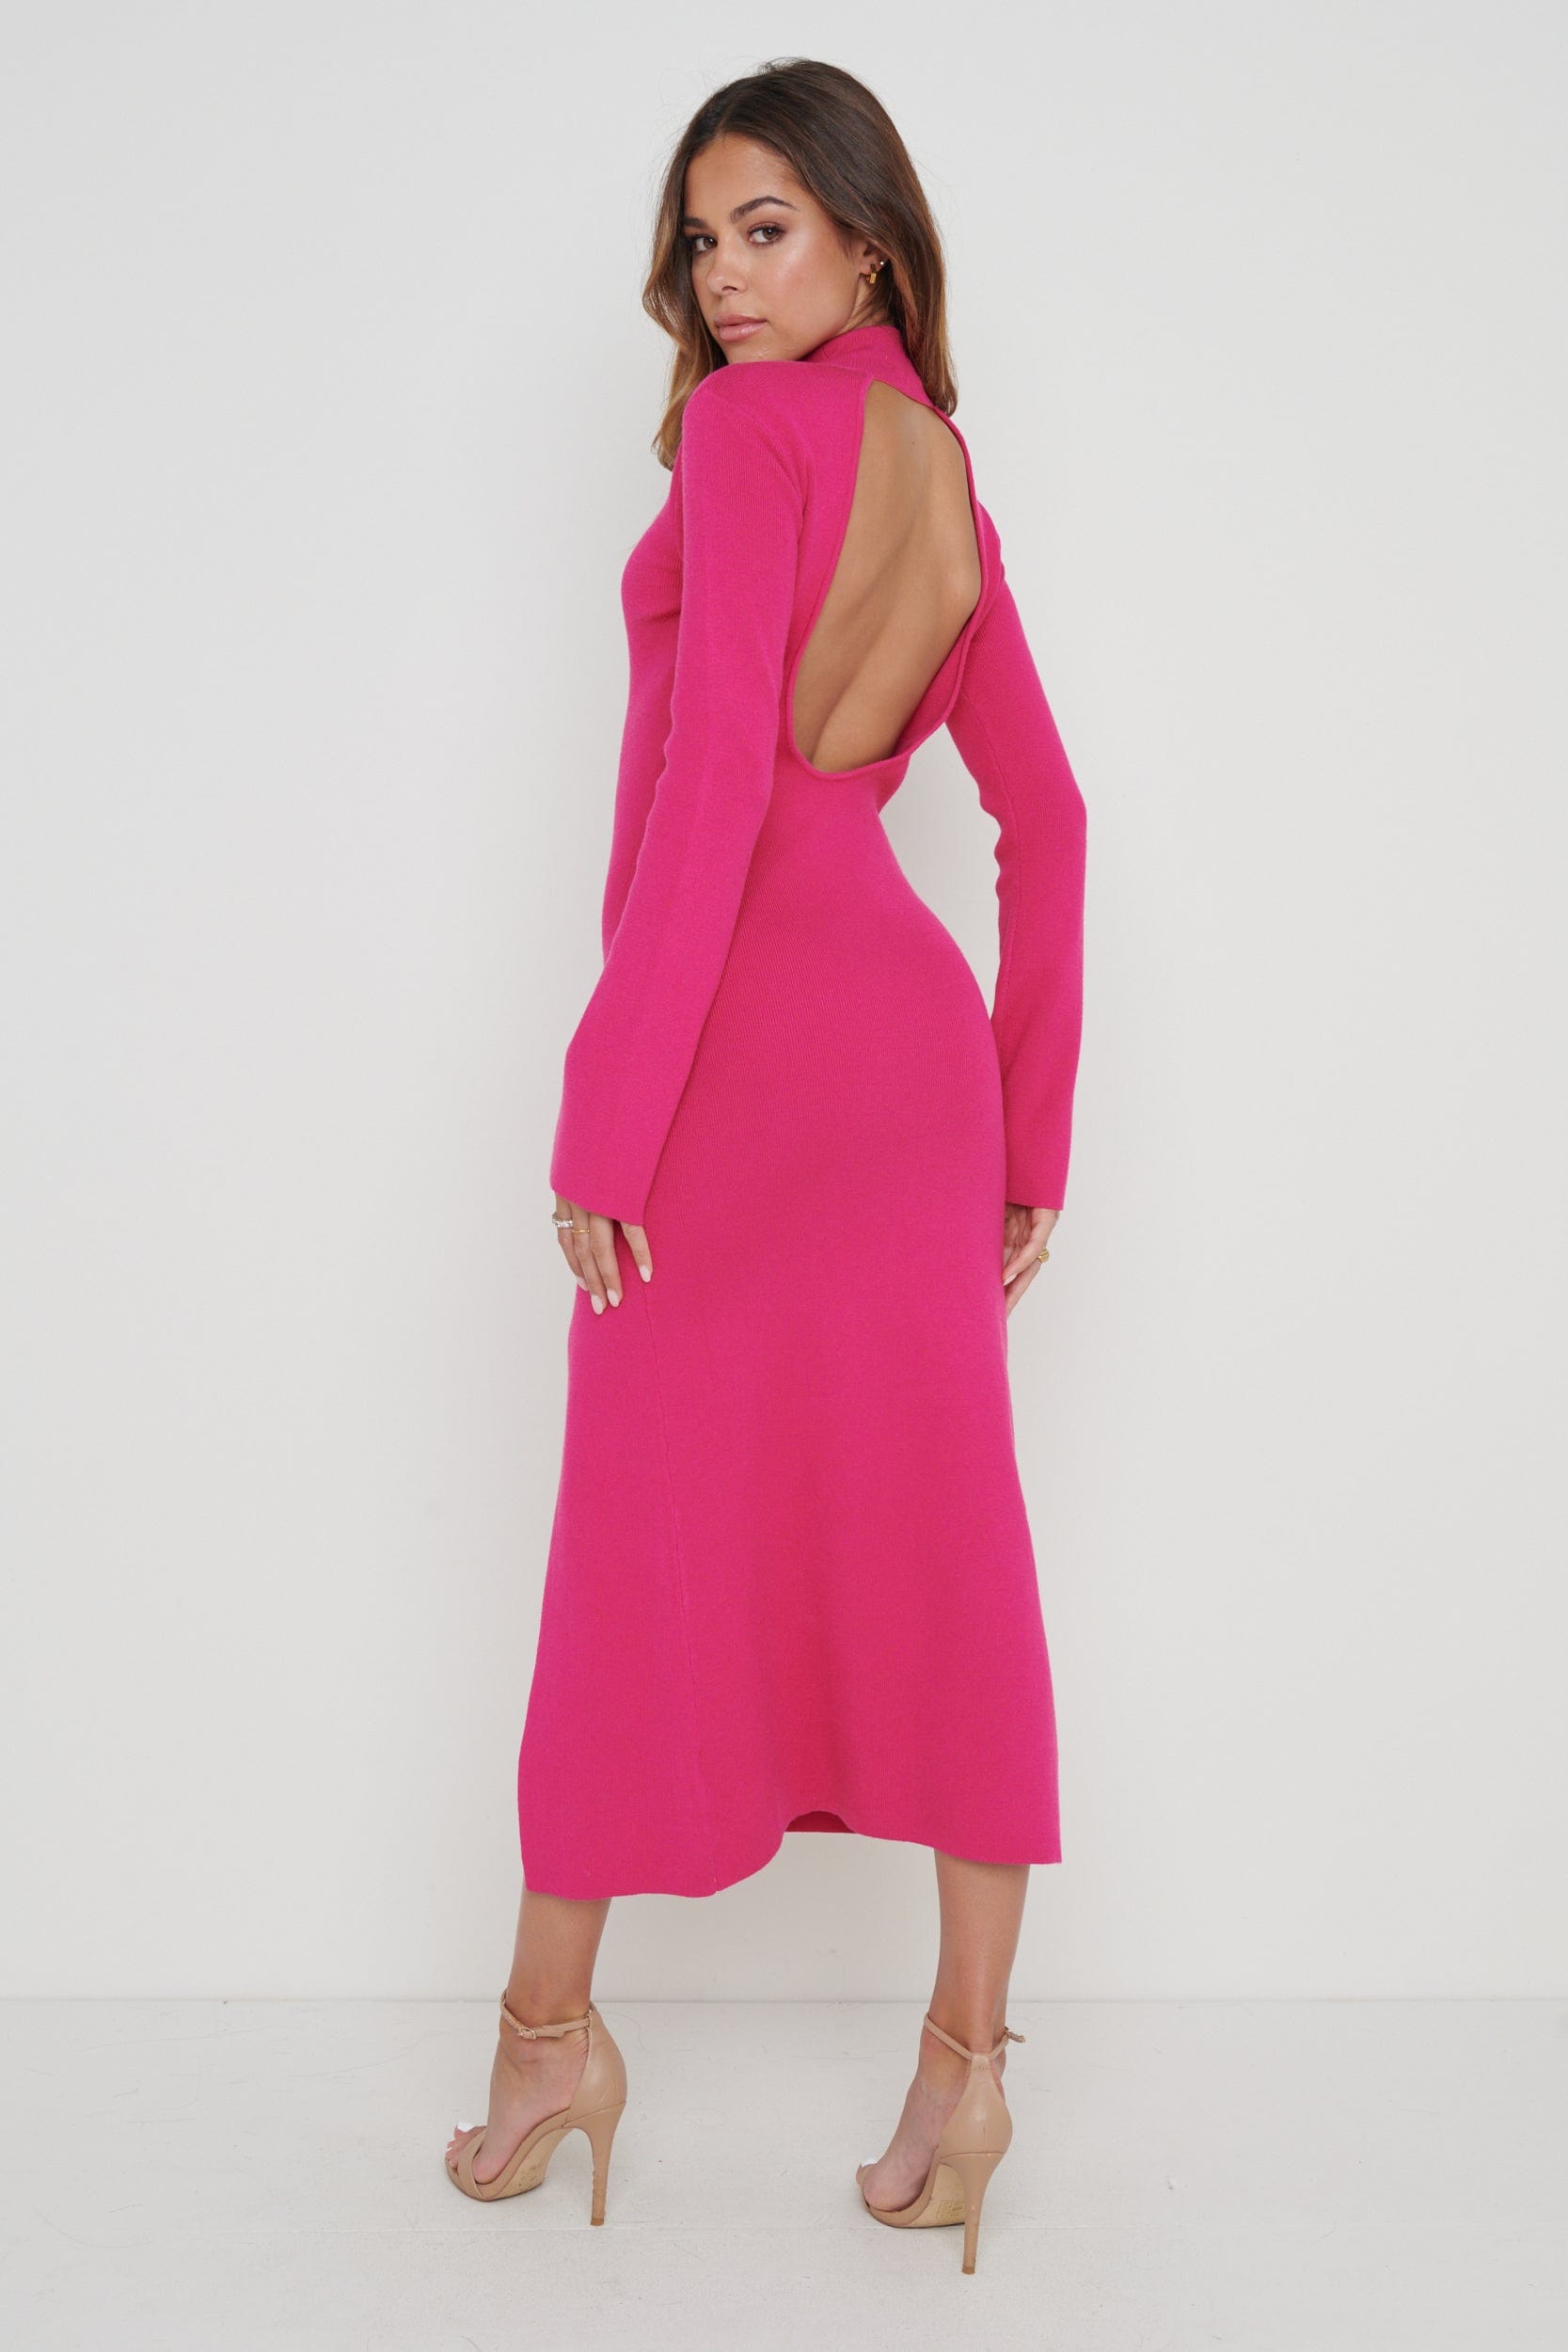 Brielle High Neck Midaxi Knit Dress - Pink, L